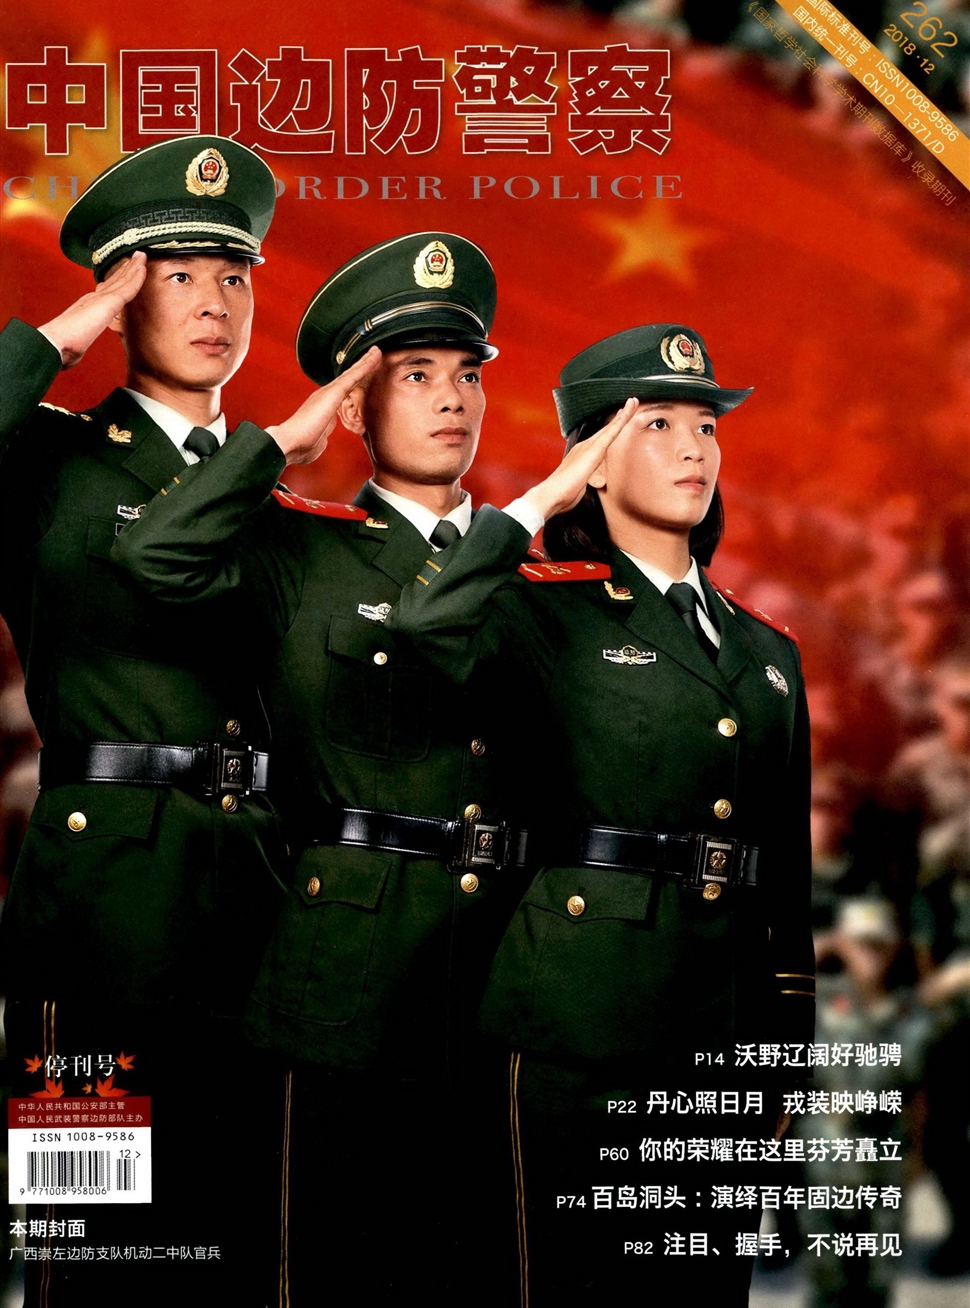 中国边防警察